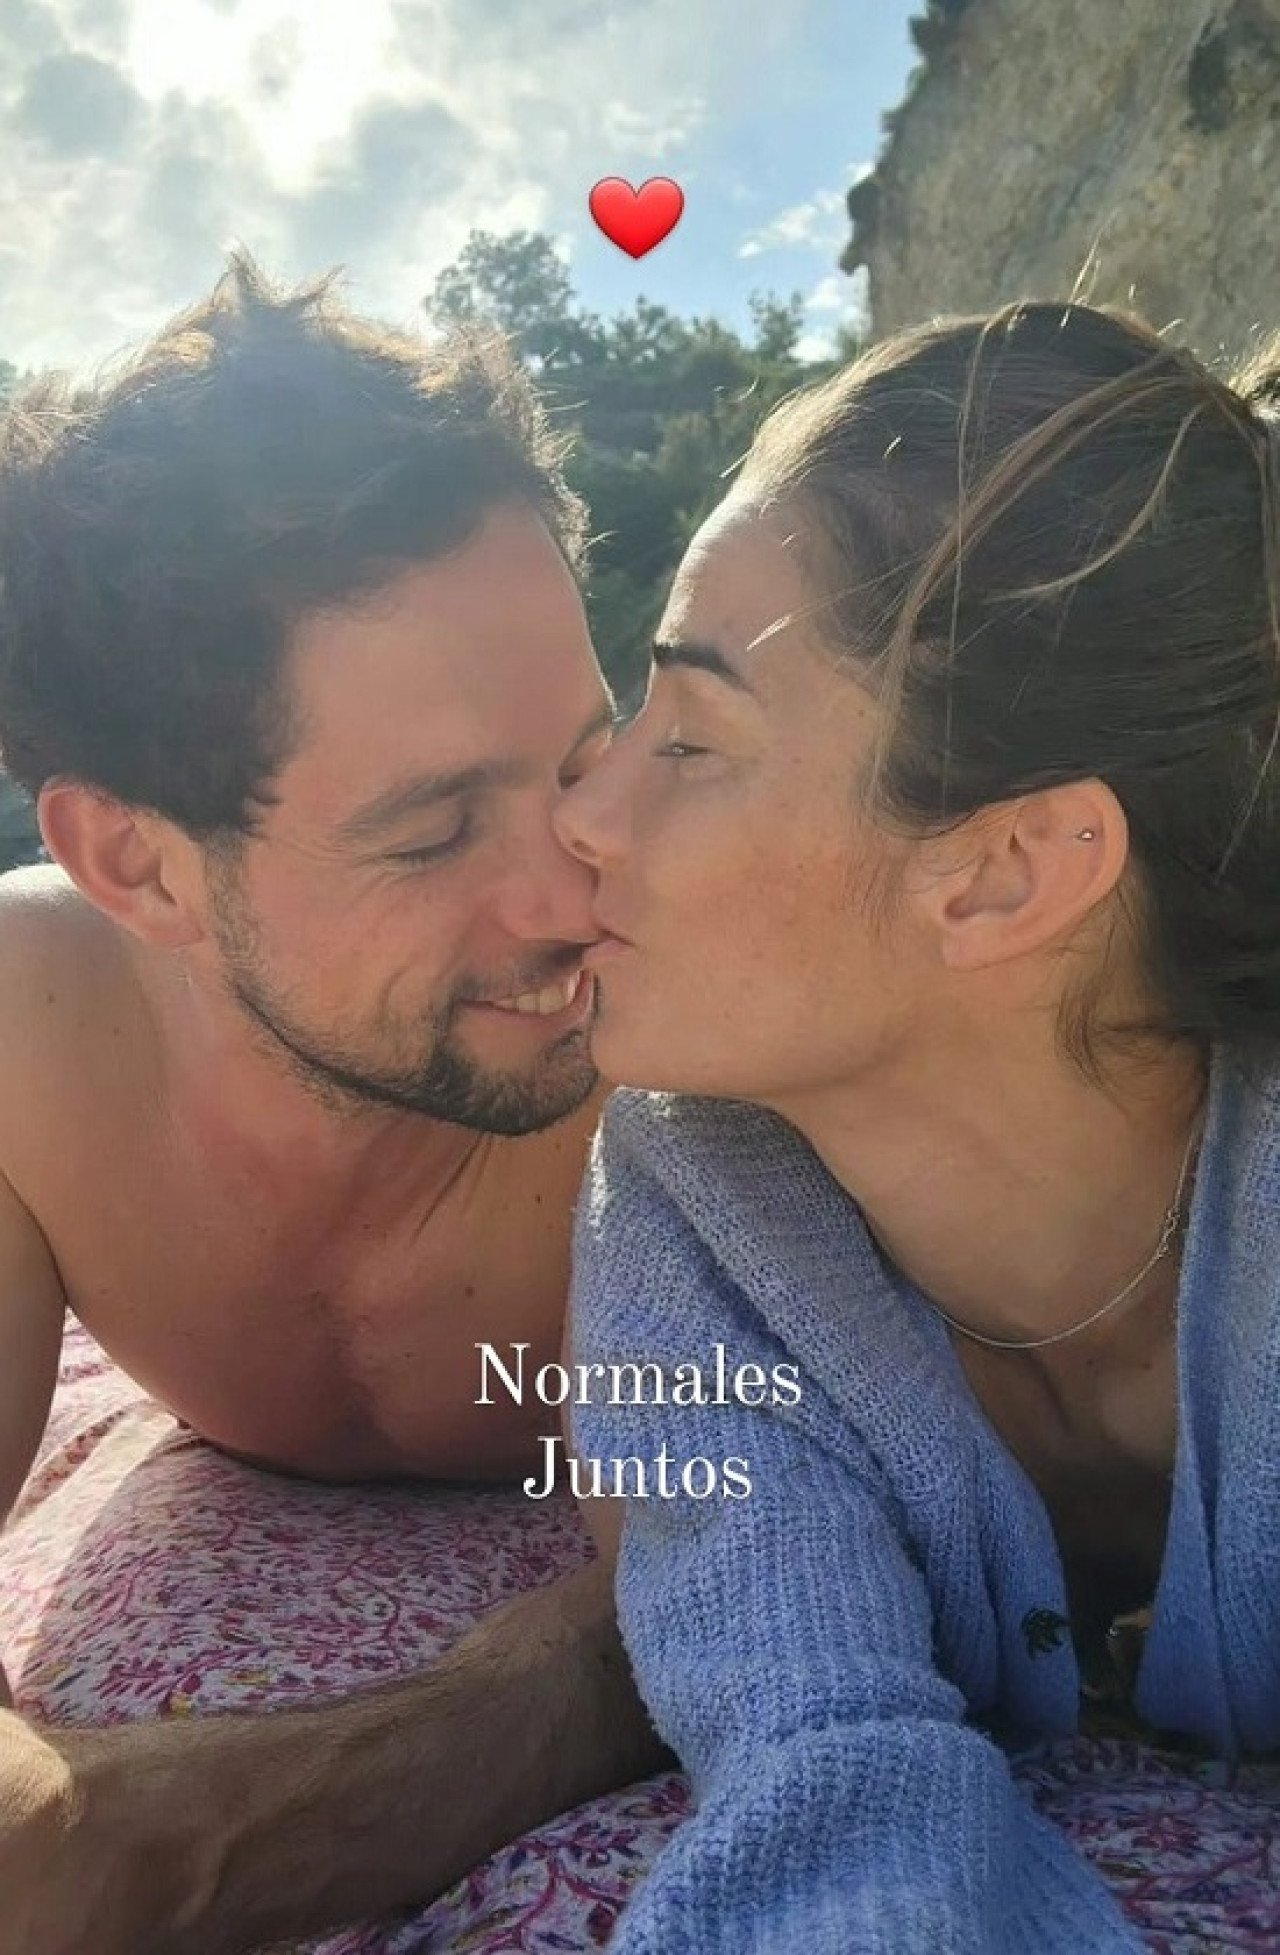 La confirmación del romance de Juana Viale con Yago Lange. Foto: Instagram @juanavialeoficial.